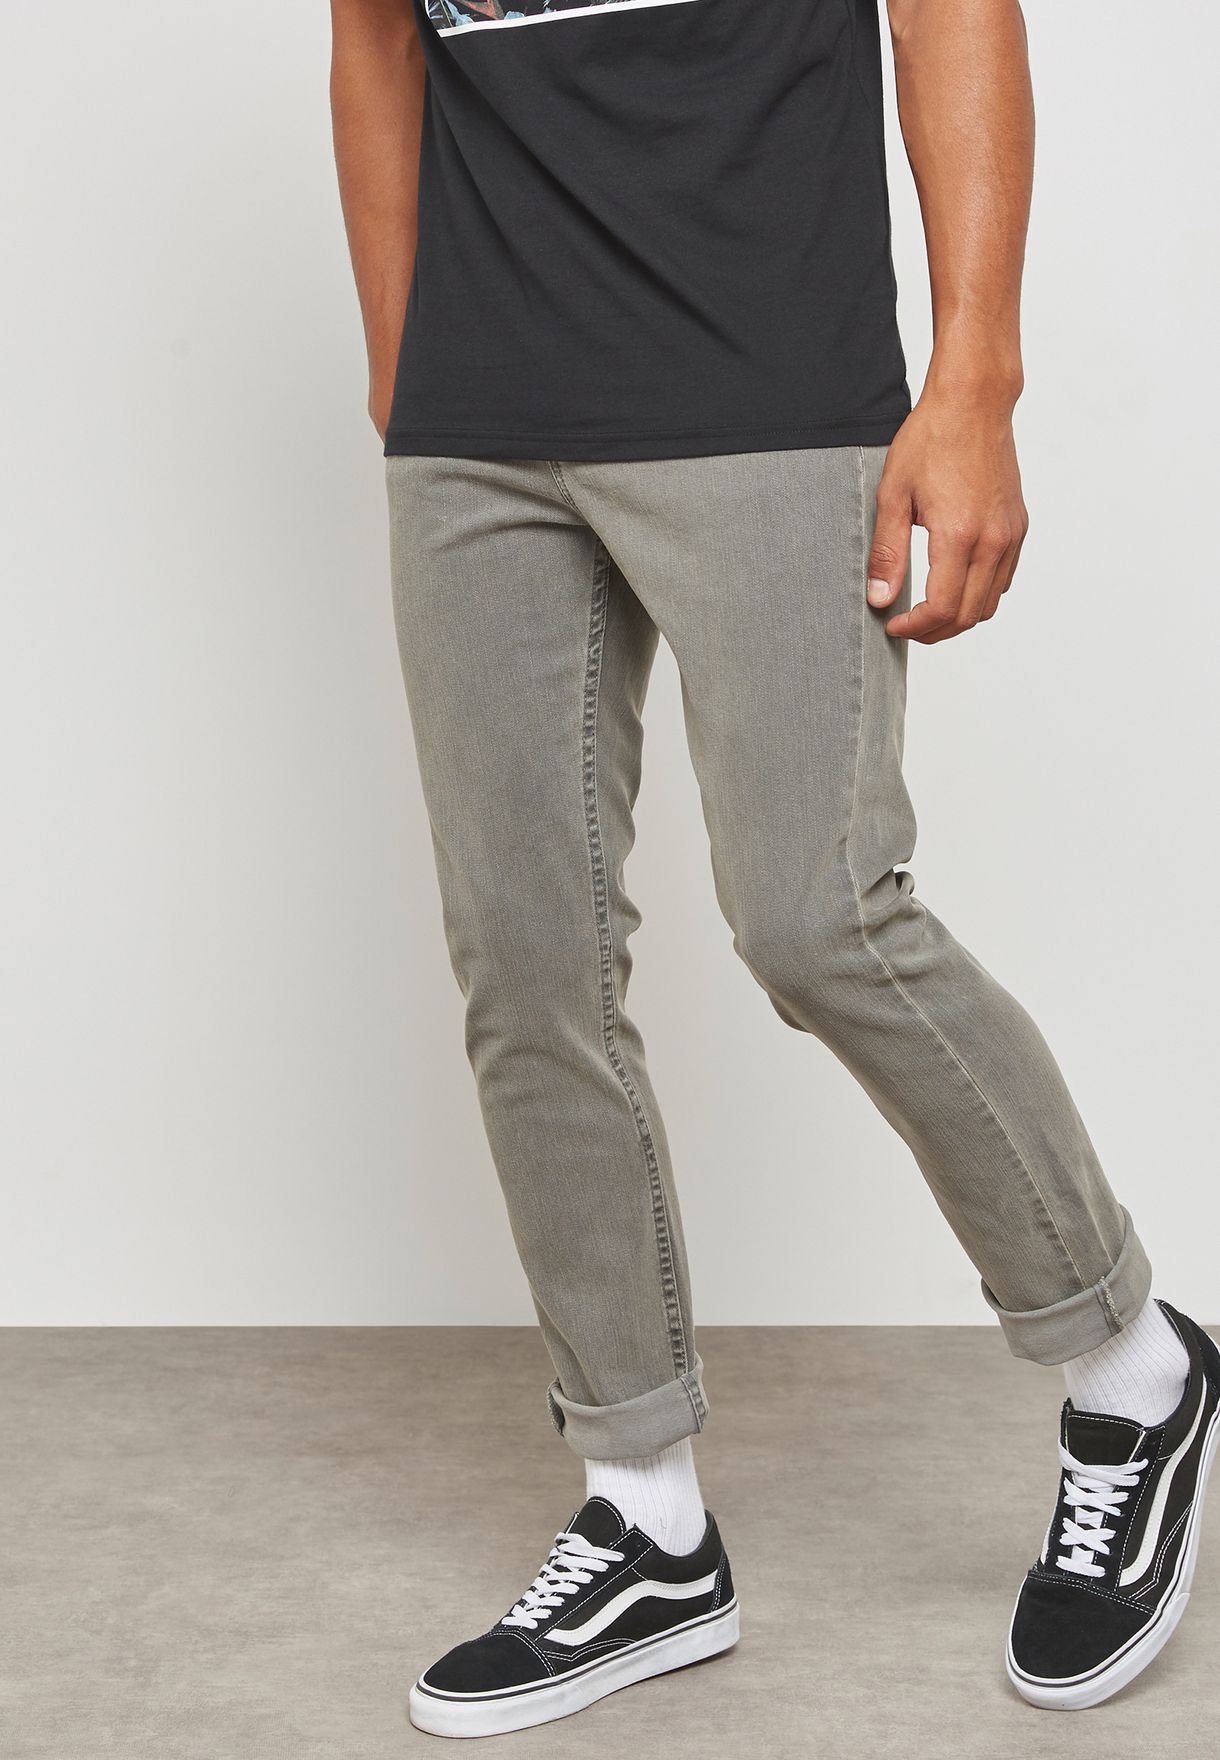 vans gray jeans